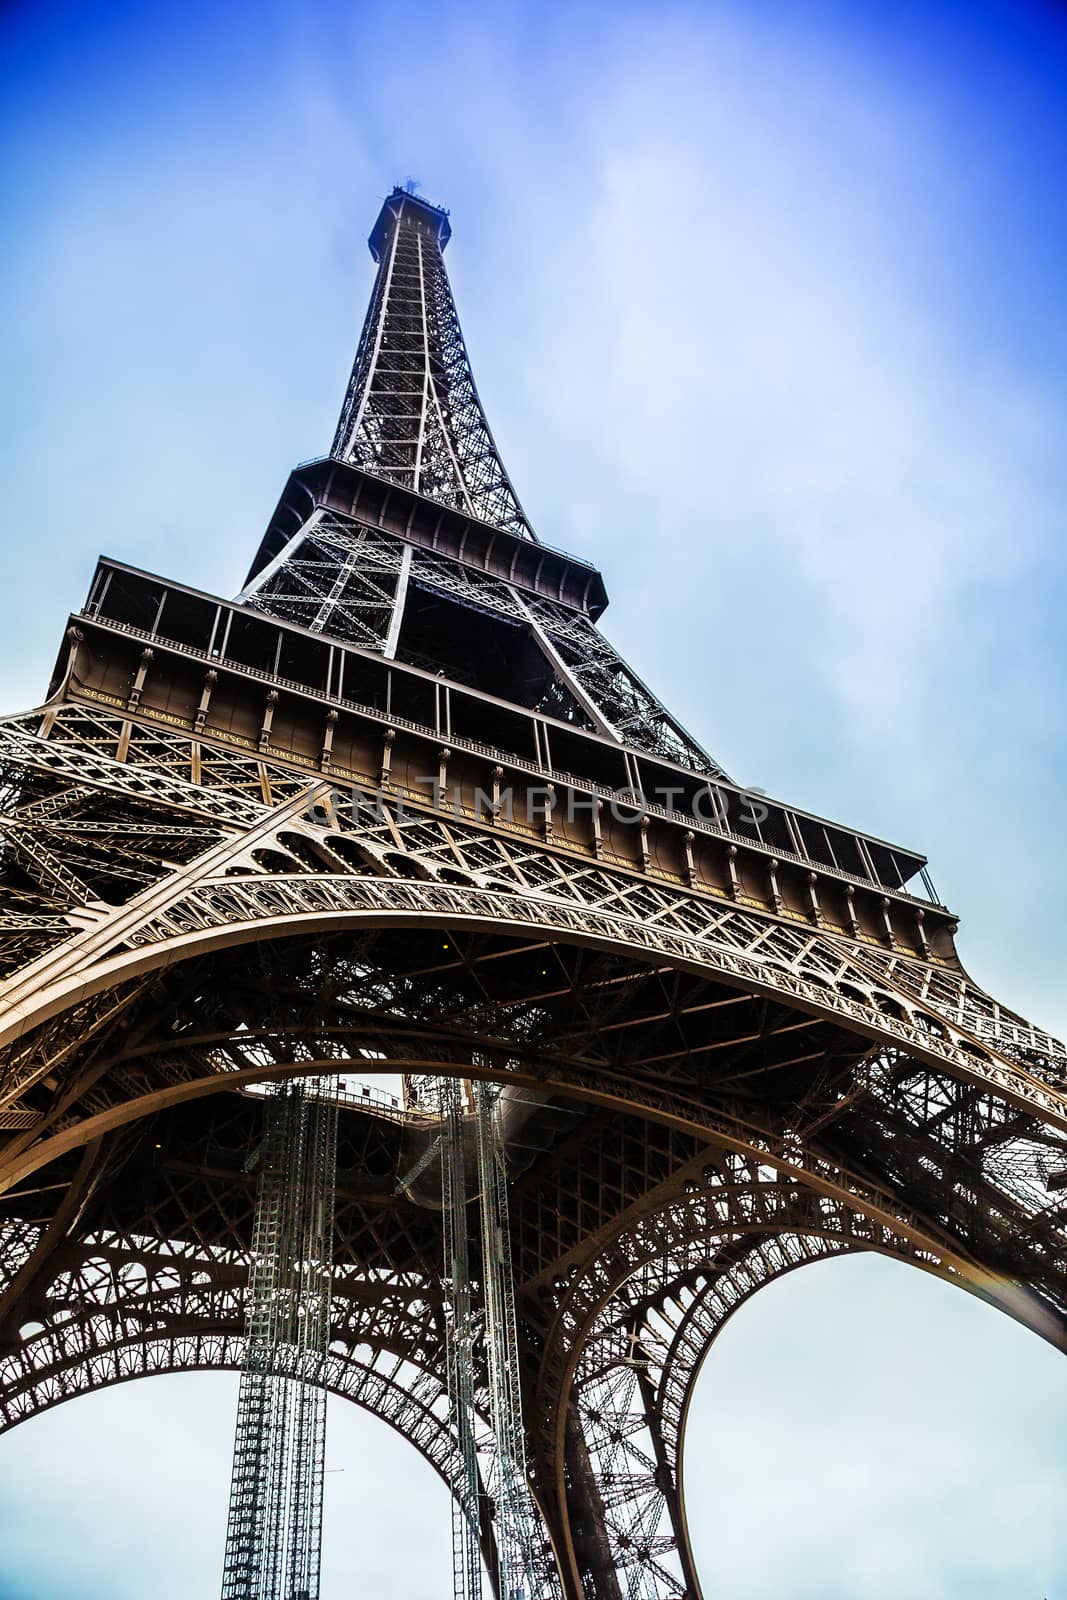 Eiffel Tower in Paris France by bloodua